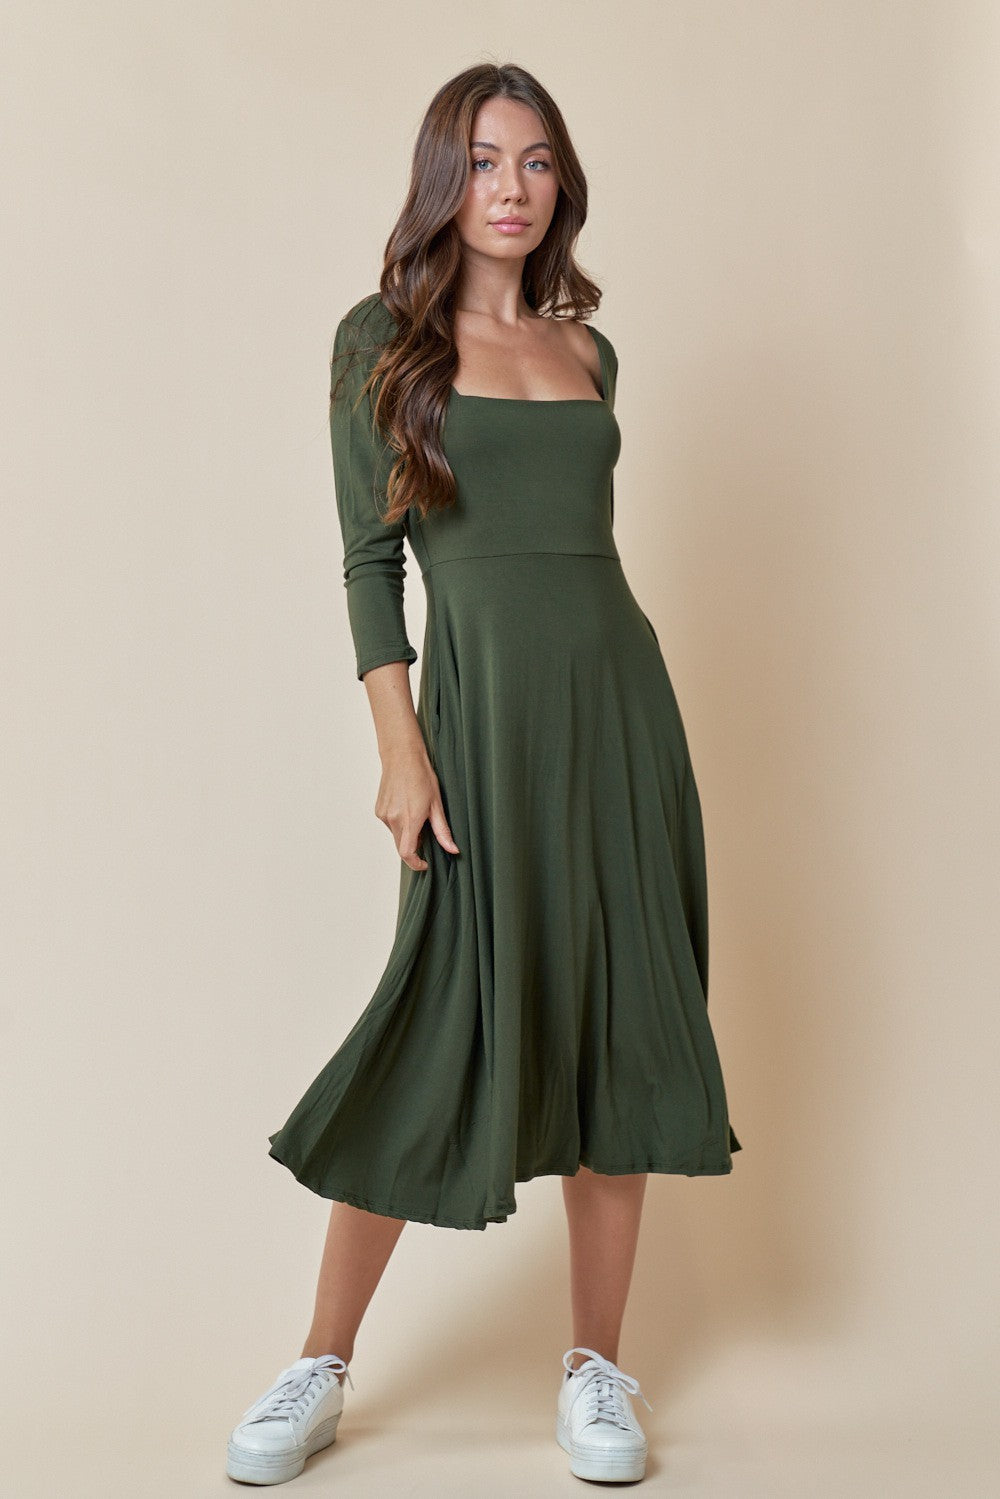 Hana Olive Dress